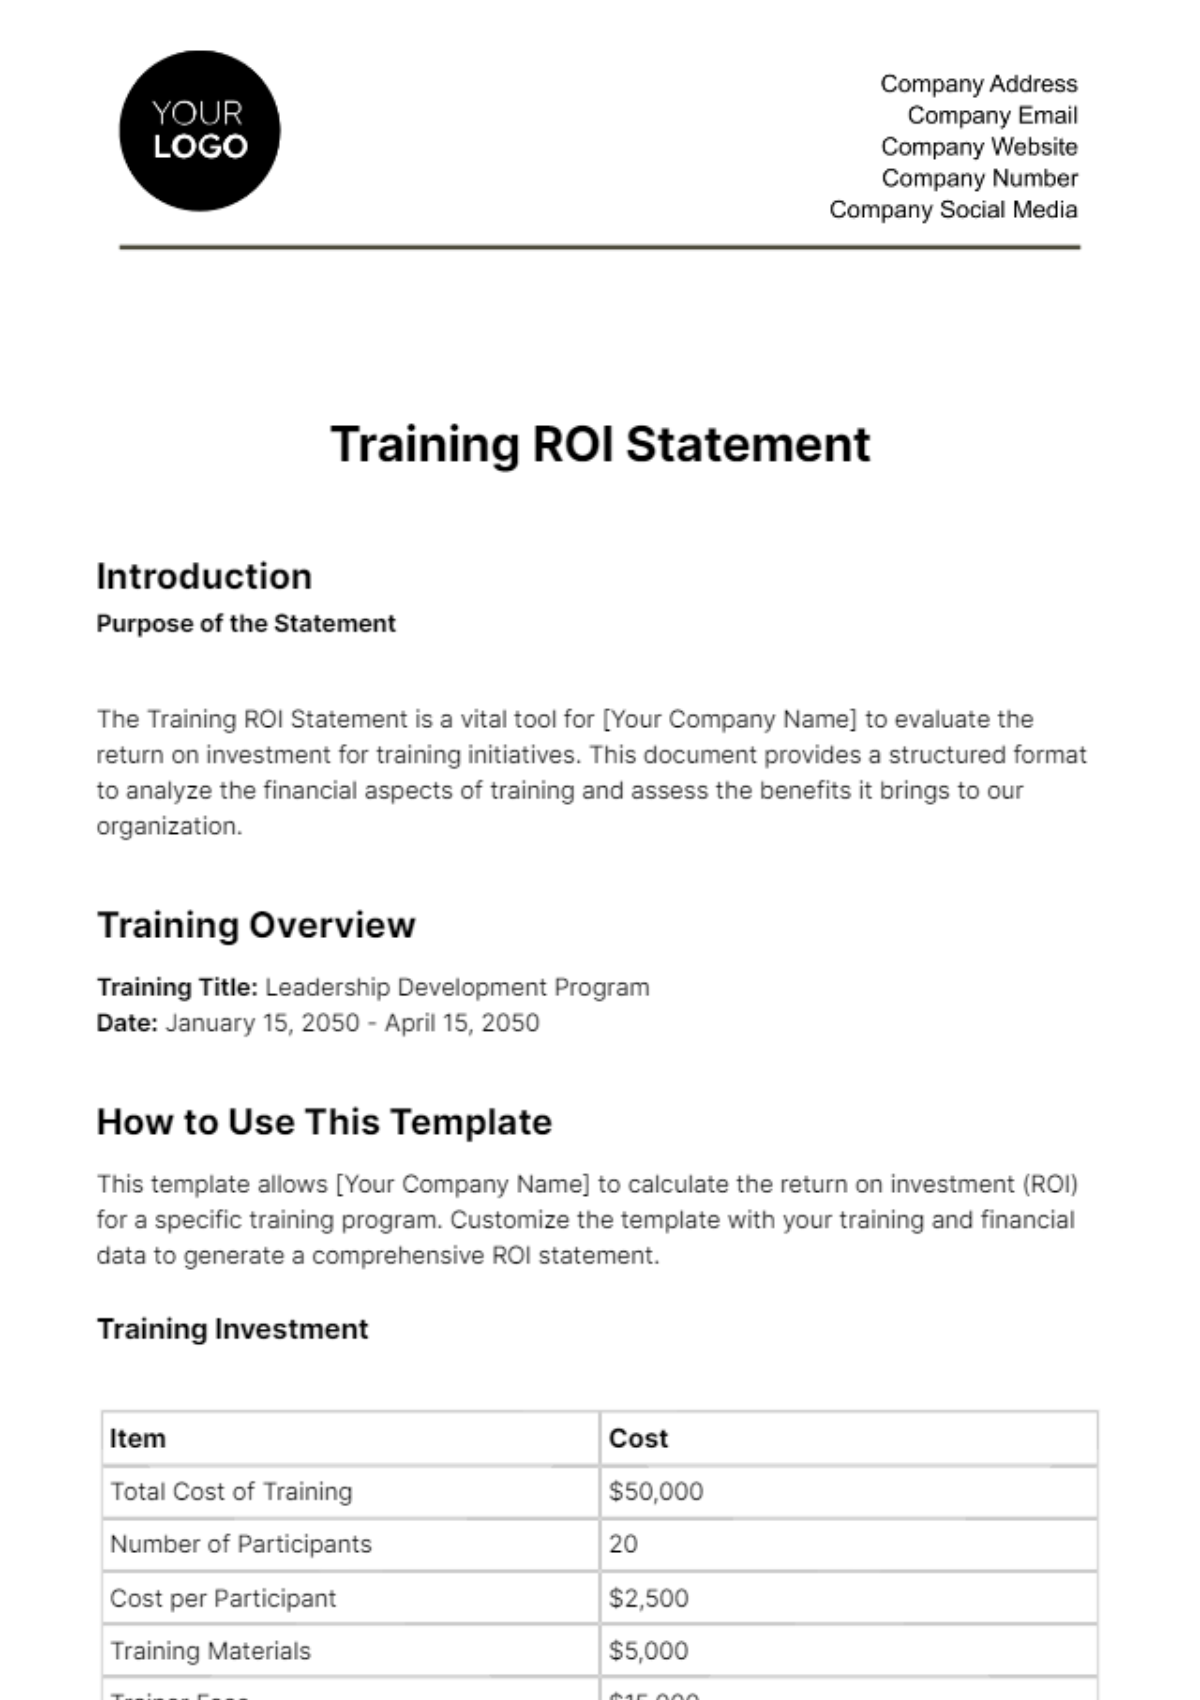 Training ROI Statement HR Template